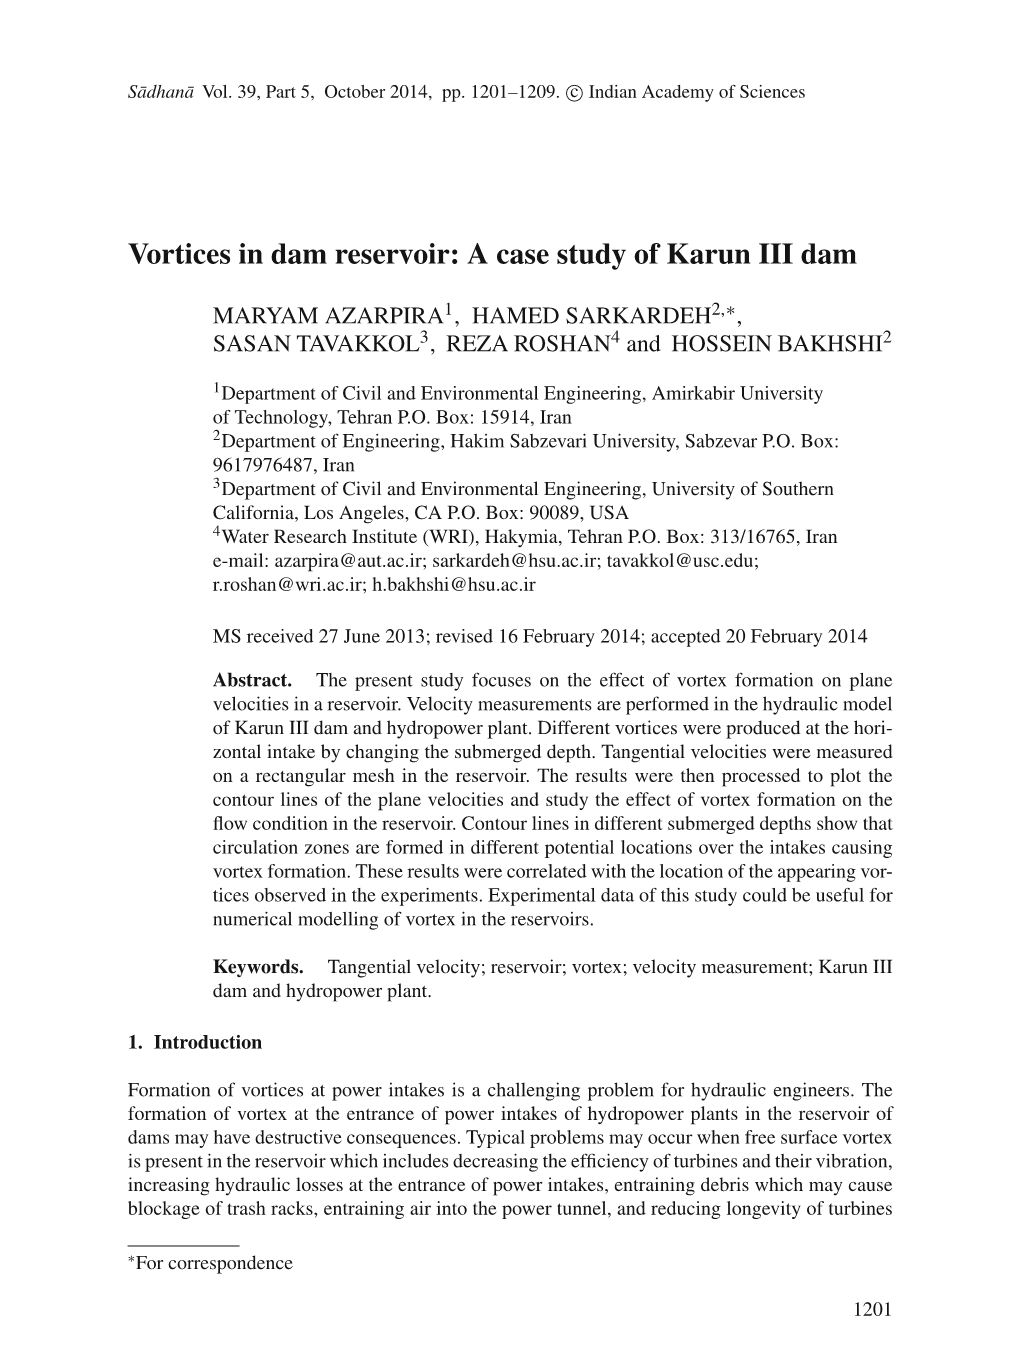 Vortices in Dam Reservoir: a Case Study of Karun III Dam